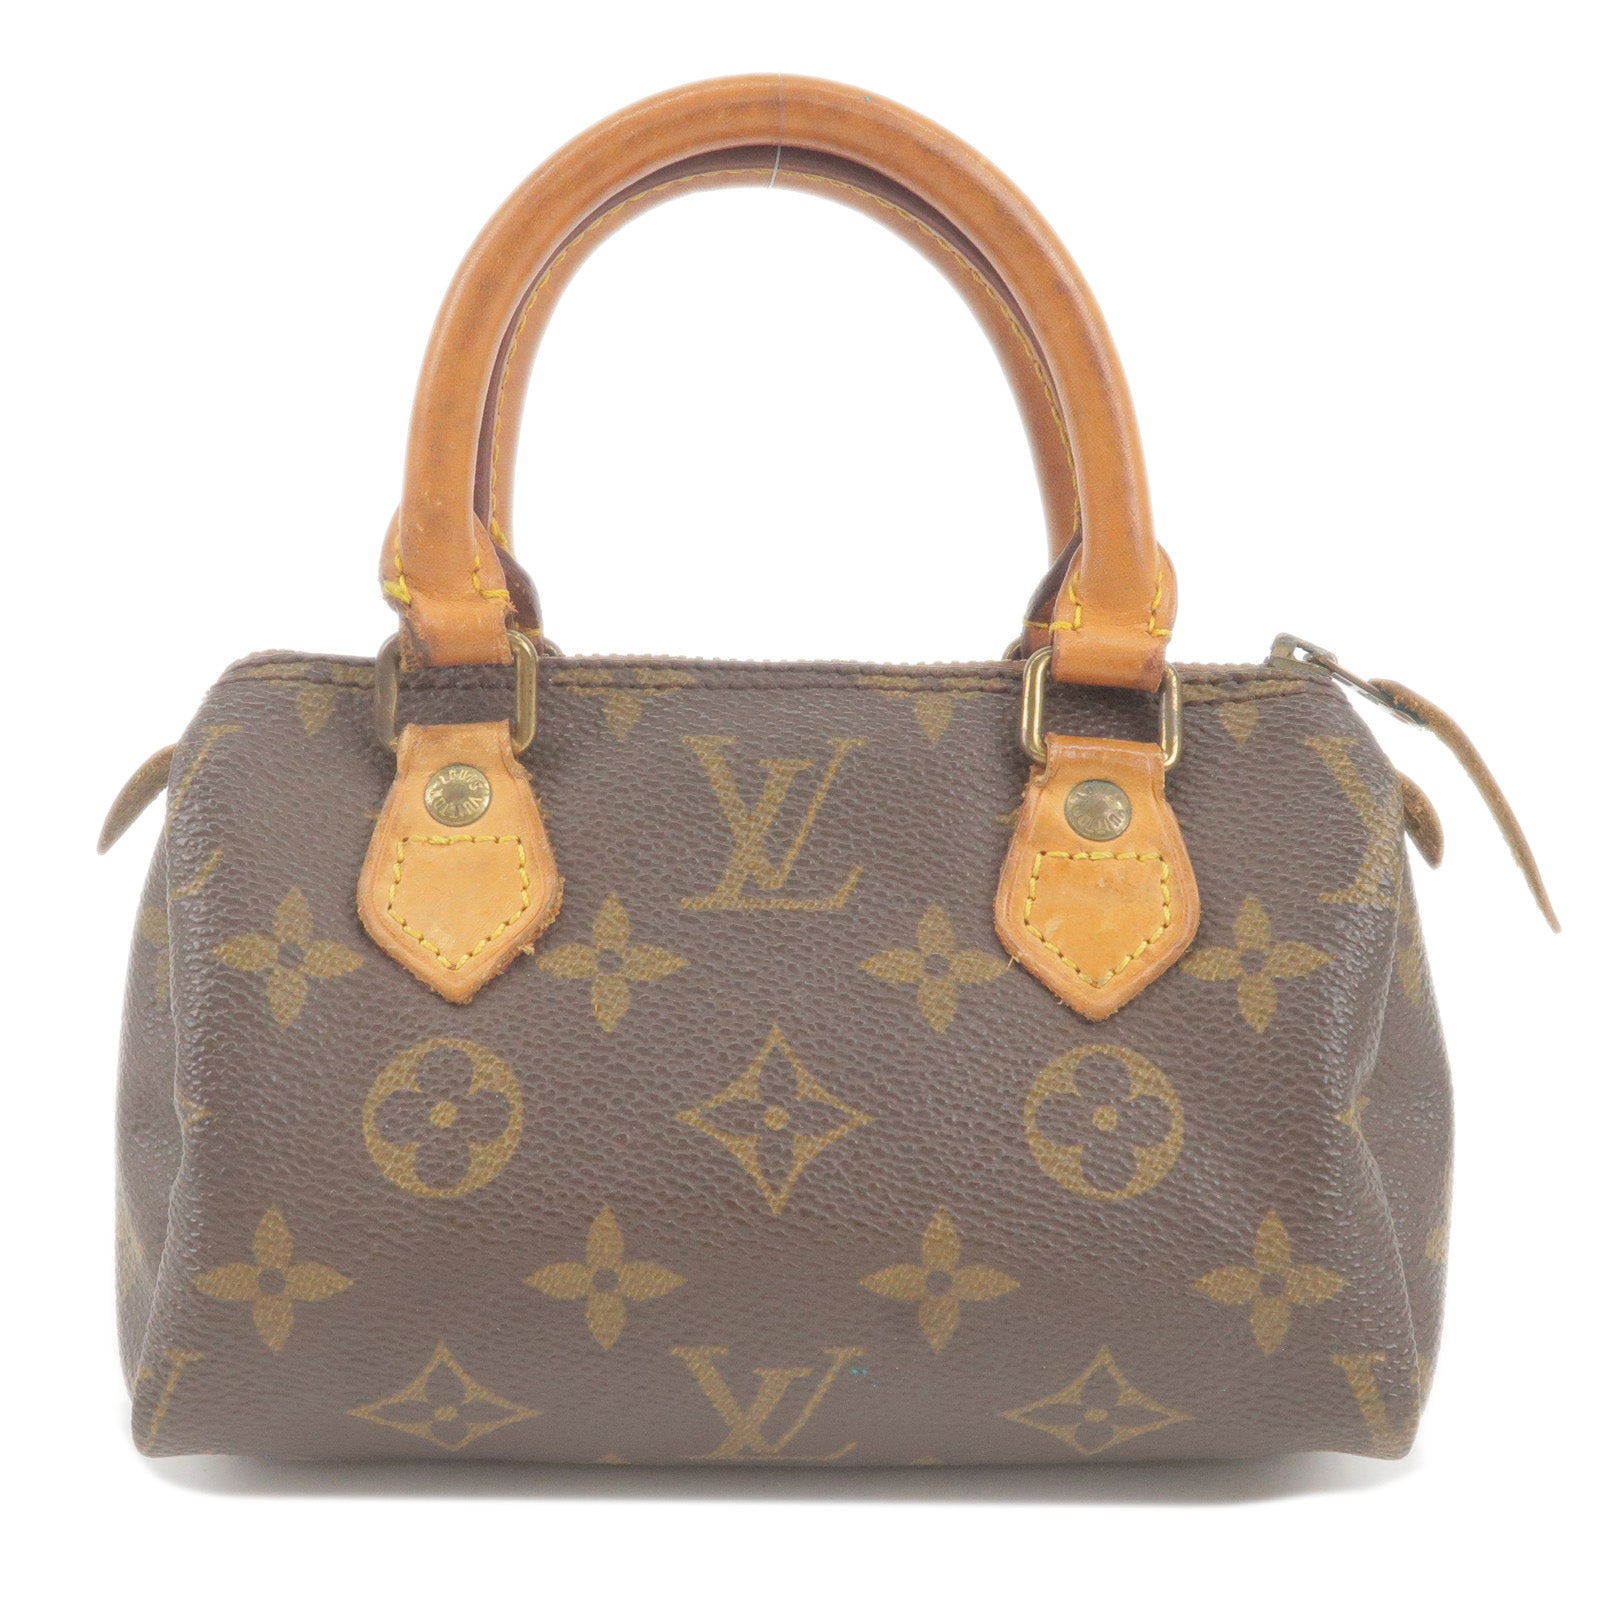 LOUIS VUITTON Monogram Mini Speedy Handbag